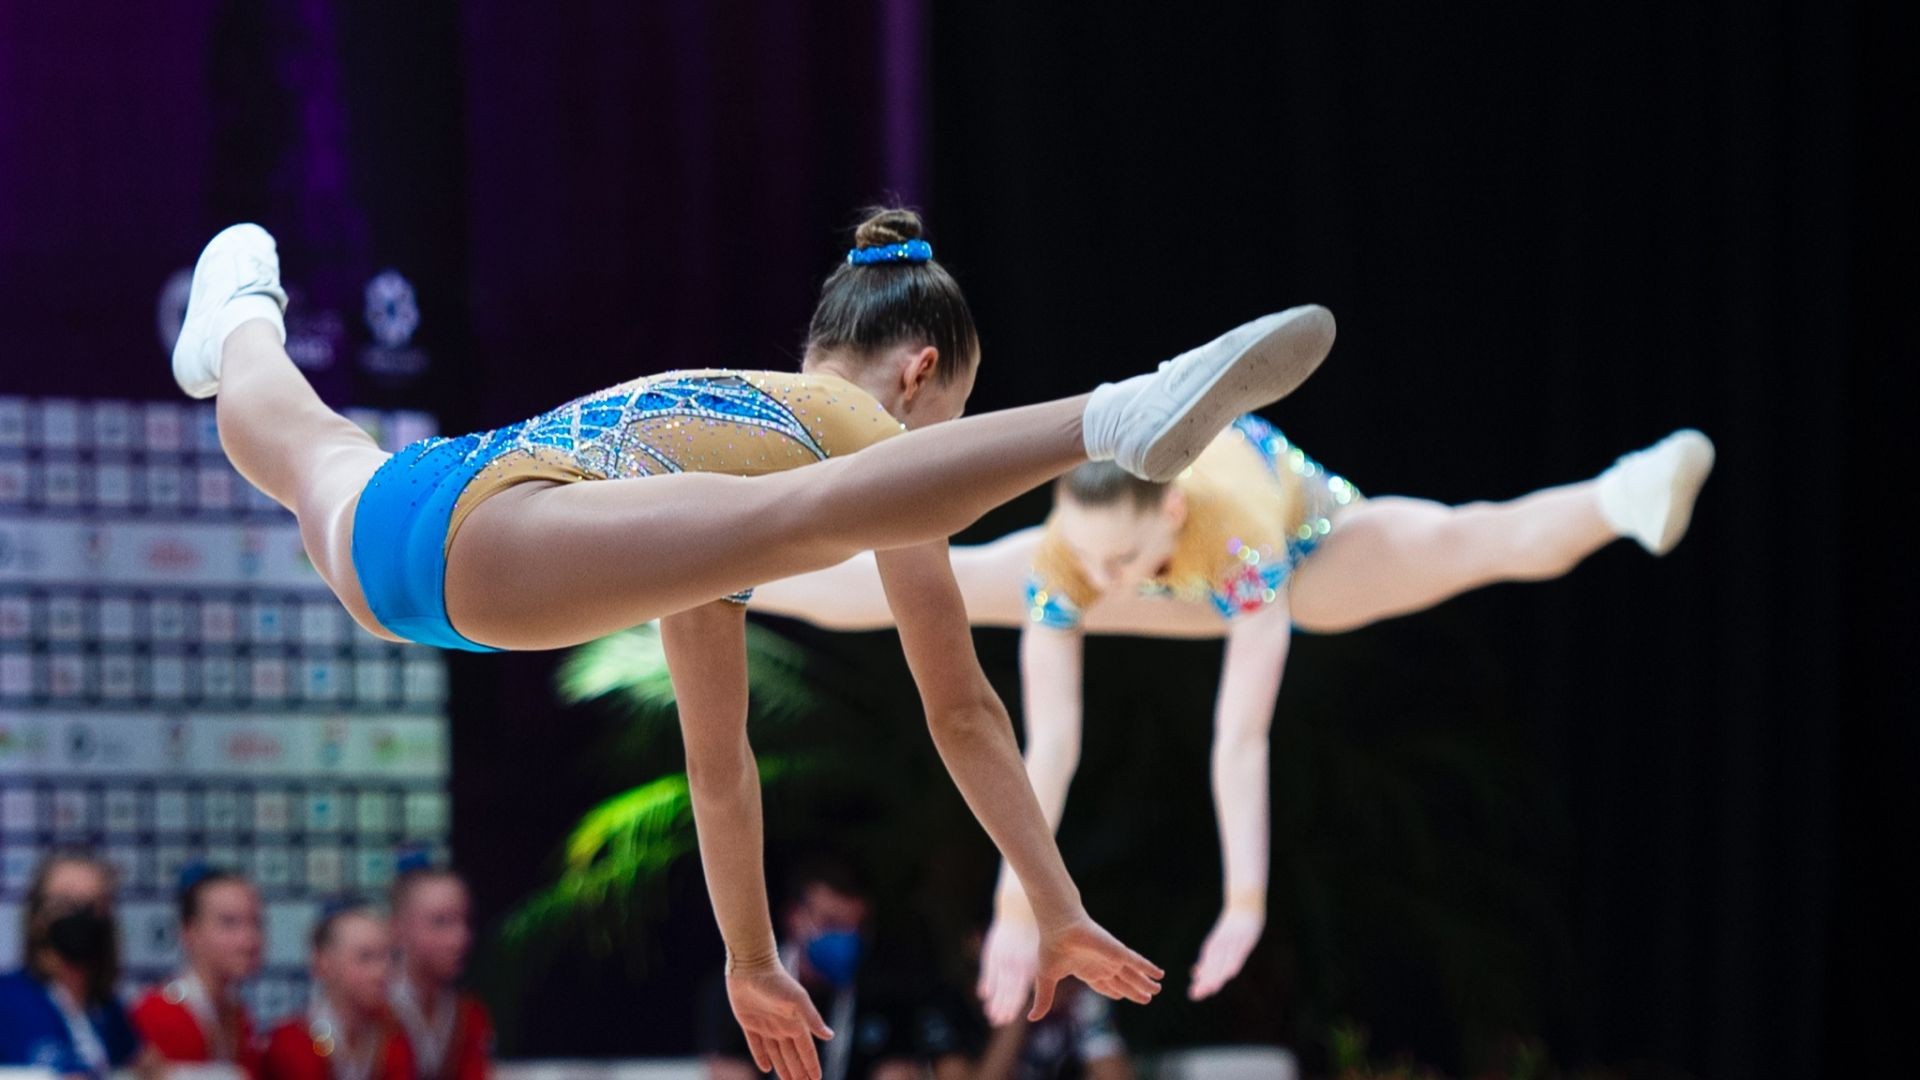 II DIENA - XXVIII-asis Lietuvos Respublikos aerobinės gimnastikos atviras čempionatas